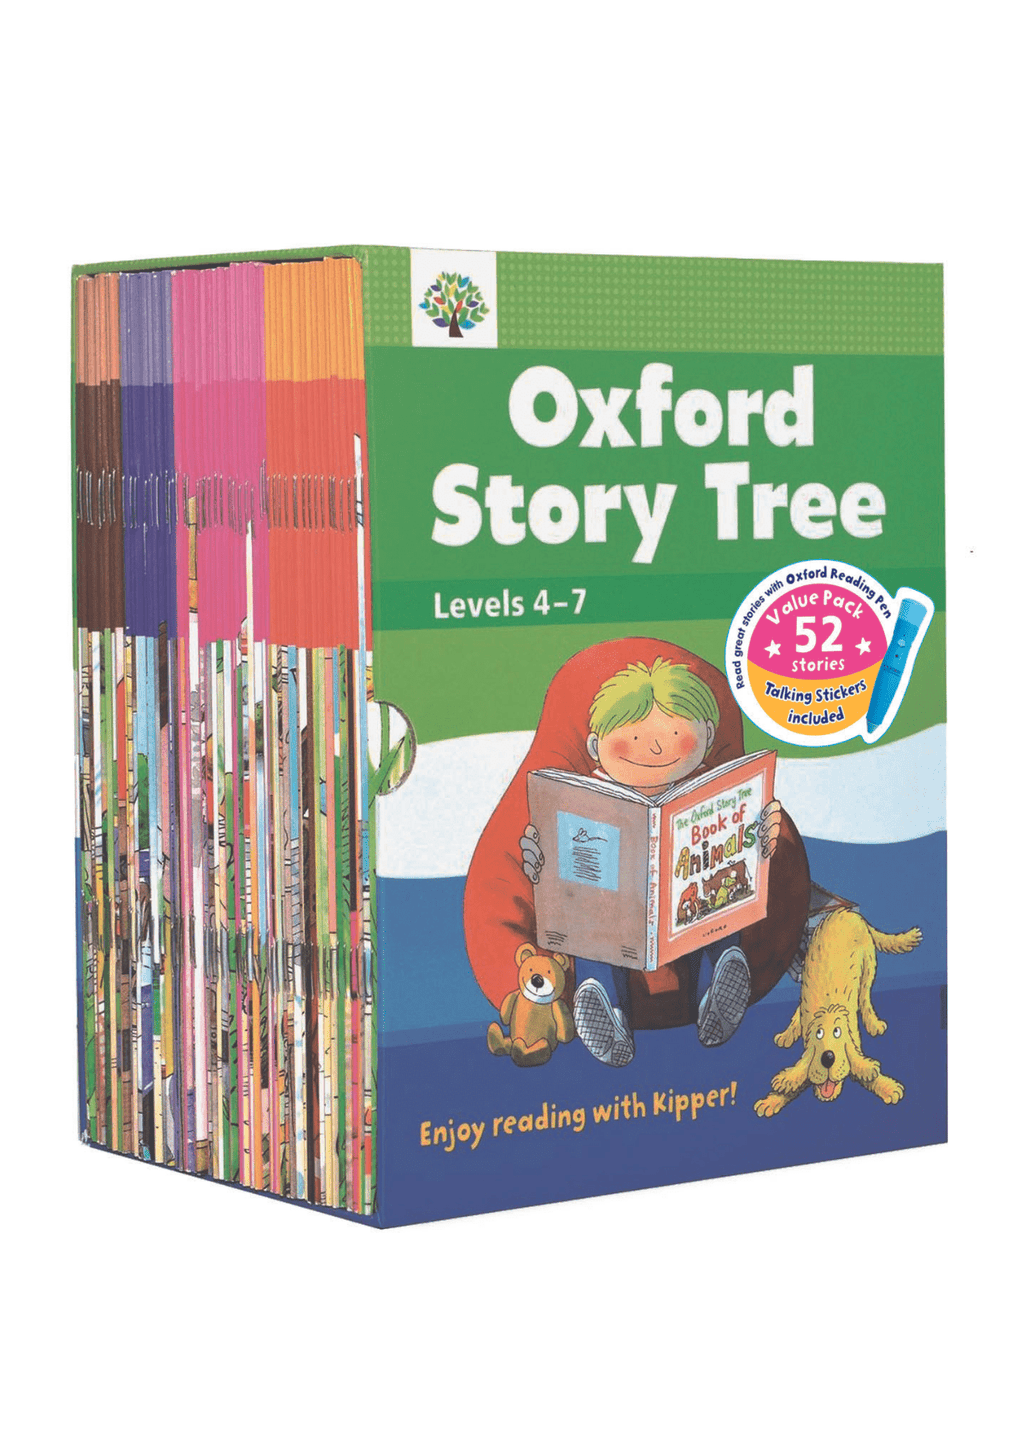 牛津大學出版社| 牛津Oxford Story Tree 兒童故事書超值套裝level 4-7